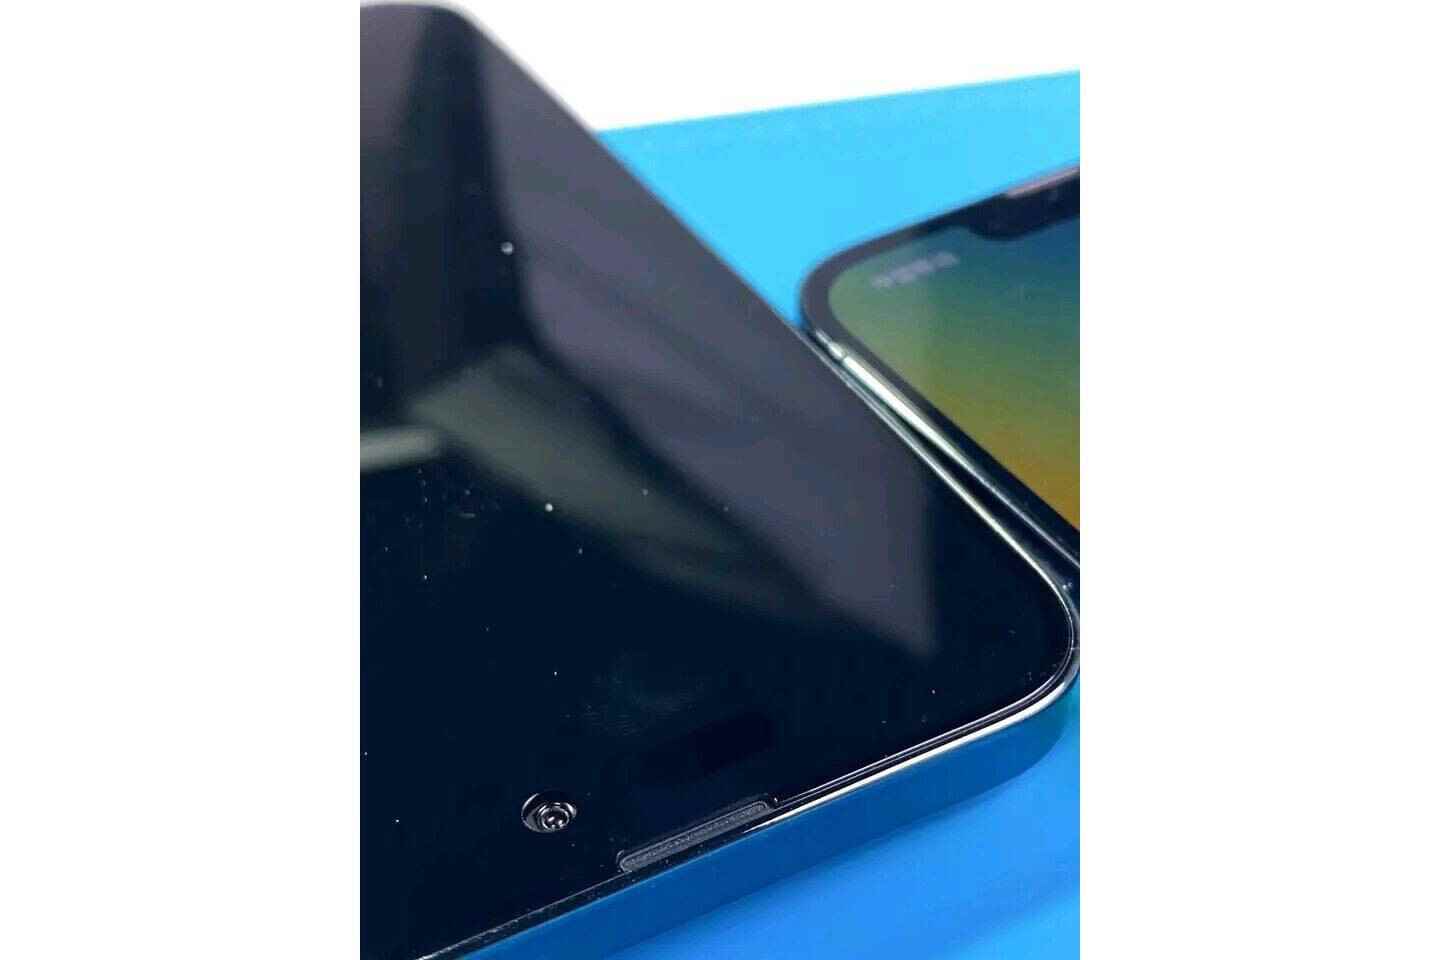 iPhone 14 Pro Max, çentik yerine hap şeklinde ve delikli kesiklere sahip olacak - Yeni video, iPhone 14 Pro Max ile iPhone 13 Pro Max arasındaki tasarım farklılıklarını anlatıyor